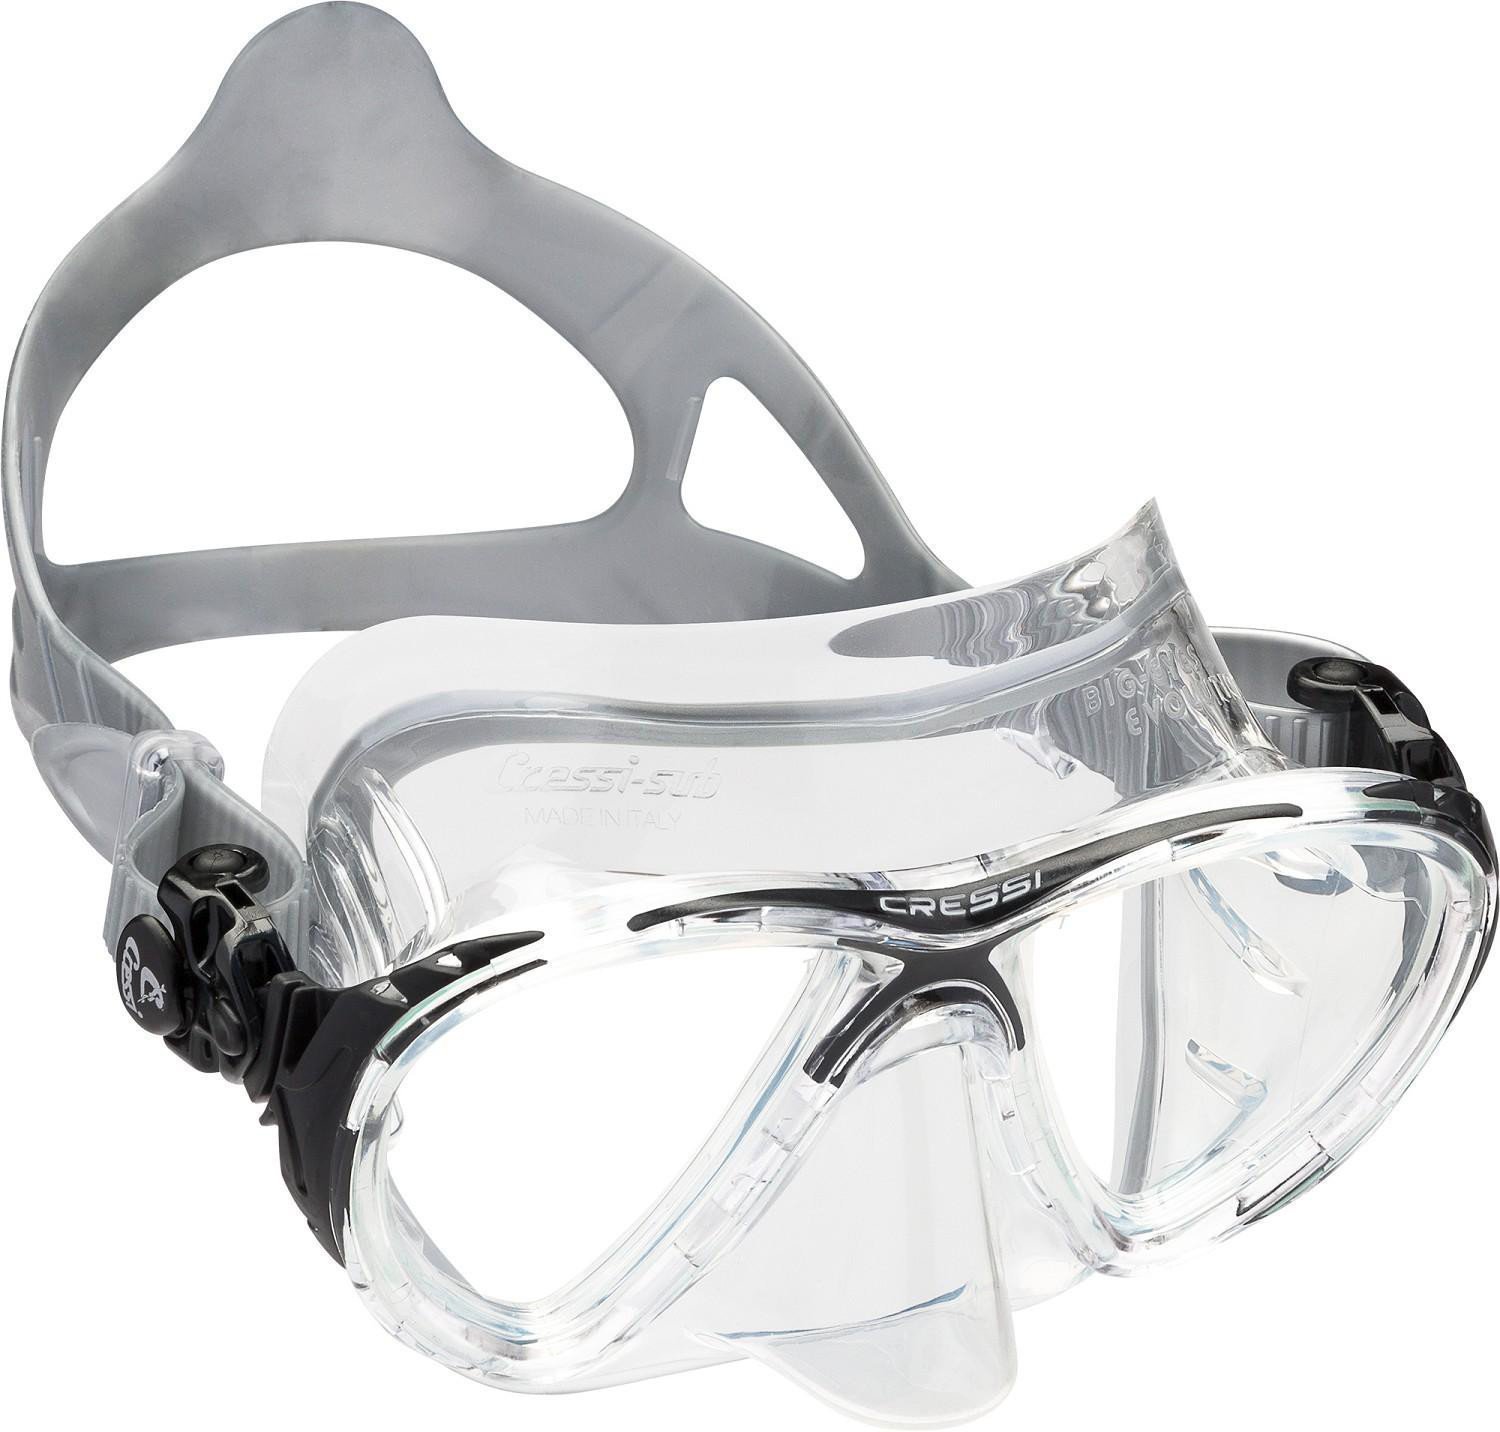 Potápačská maska Cressi Big Eyes Evolution Potápačská maska